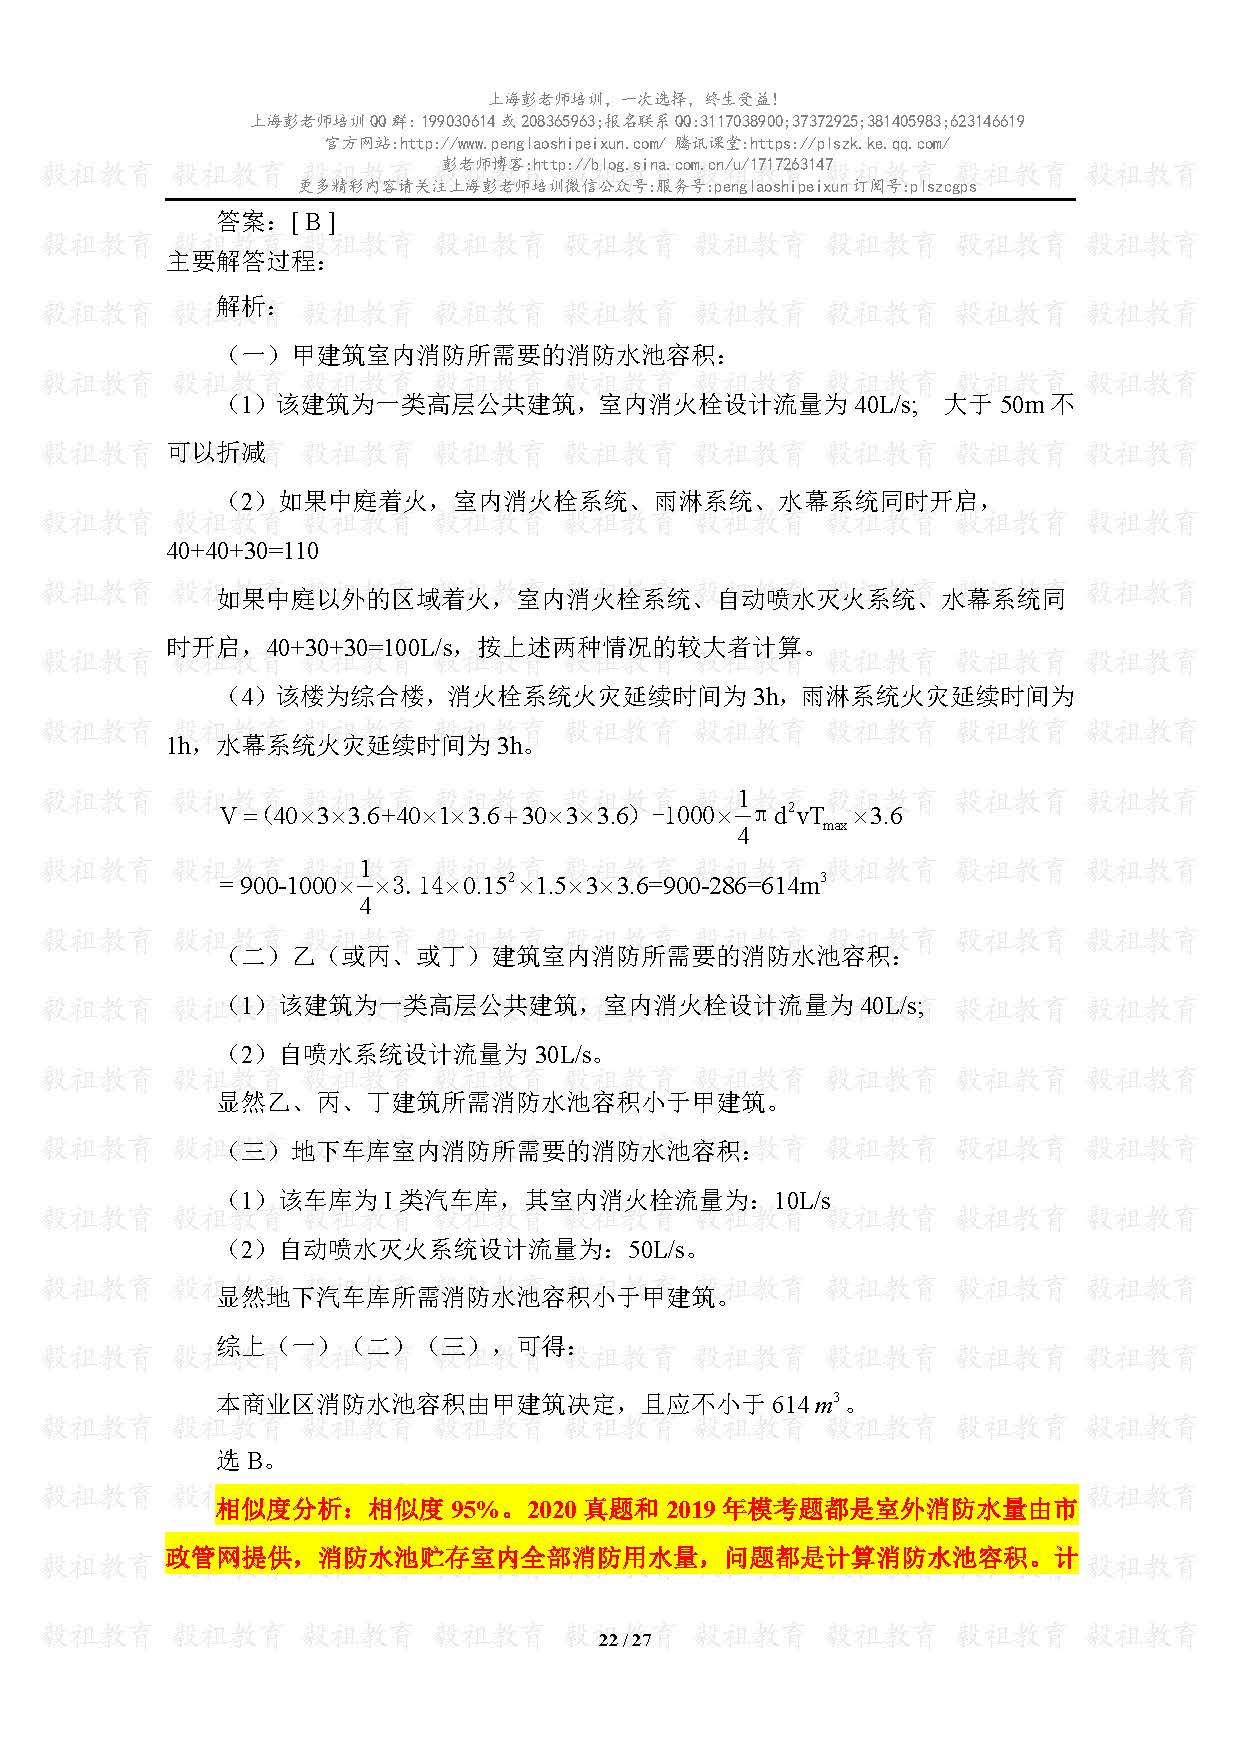 2020注册给排水考试真题与模考题相似度分析-上海彭老师培训_页面_22.jpg.jpg